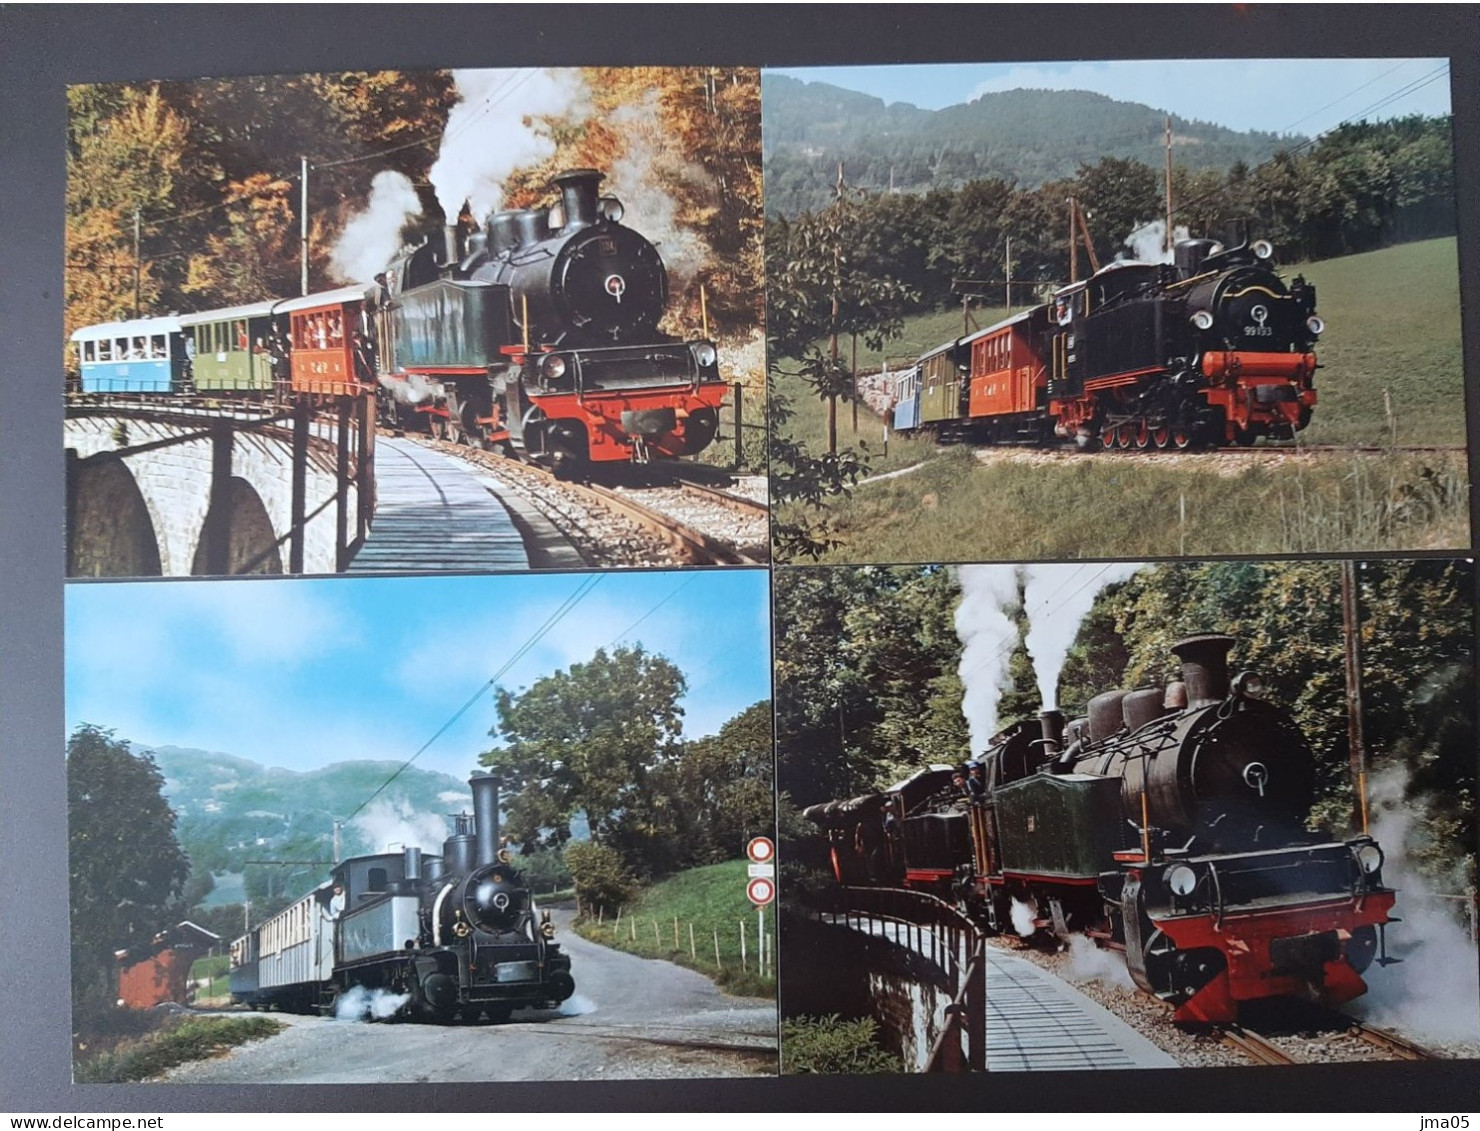 Beau lot de 130 cartes de Train - Locomotive - Train électrique - Motrice - Chemin de fer fédéraux de Suisse SBB CFF